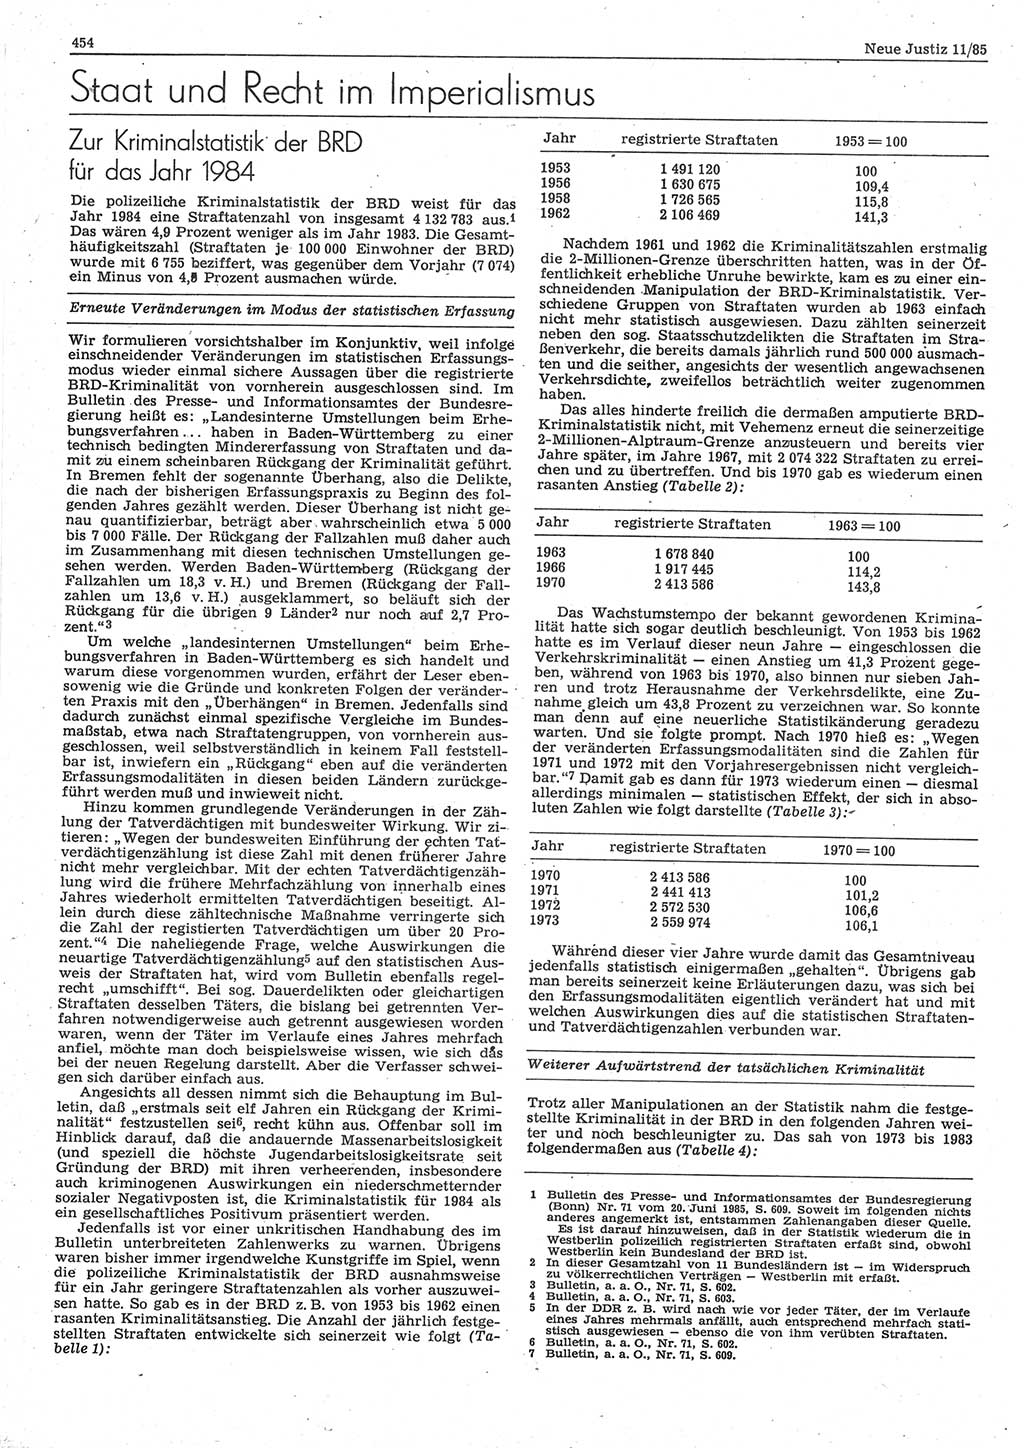 Neue Justiz (NJ), Zeitschrift für sozialistisches Recht und Gesetzlichkeit [Deutsche Demokratische Republik (DDR)], 39. Jahrgang 1985, Seite 454 (NJ DDR 1985, S. 454)